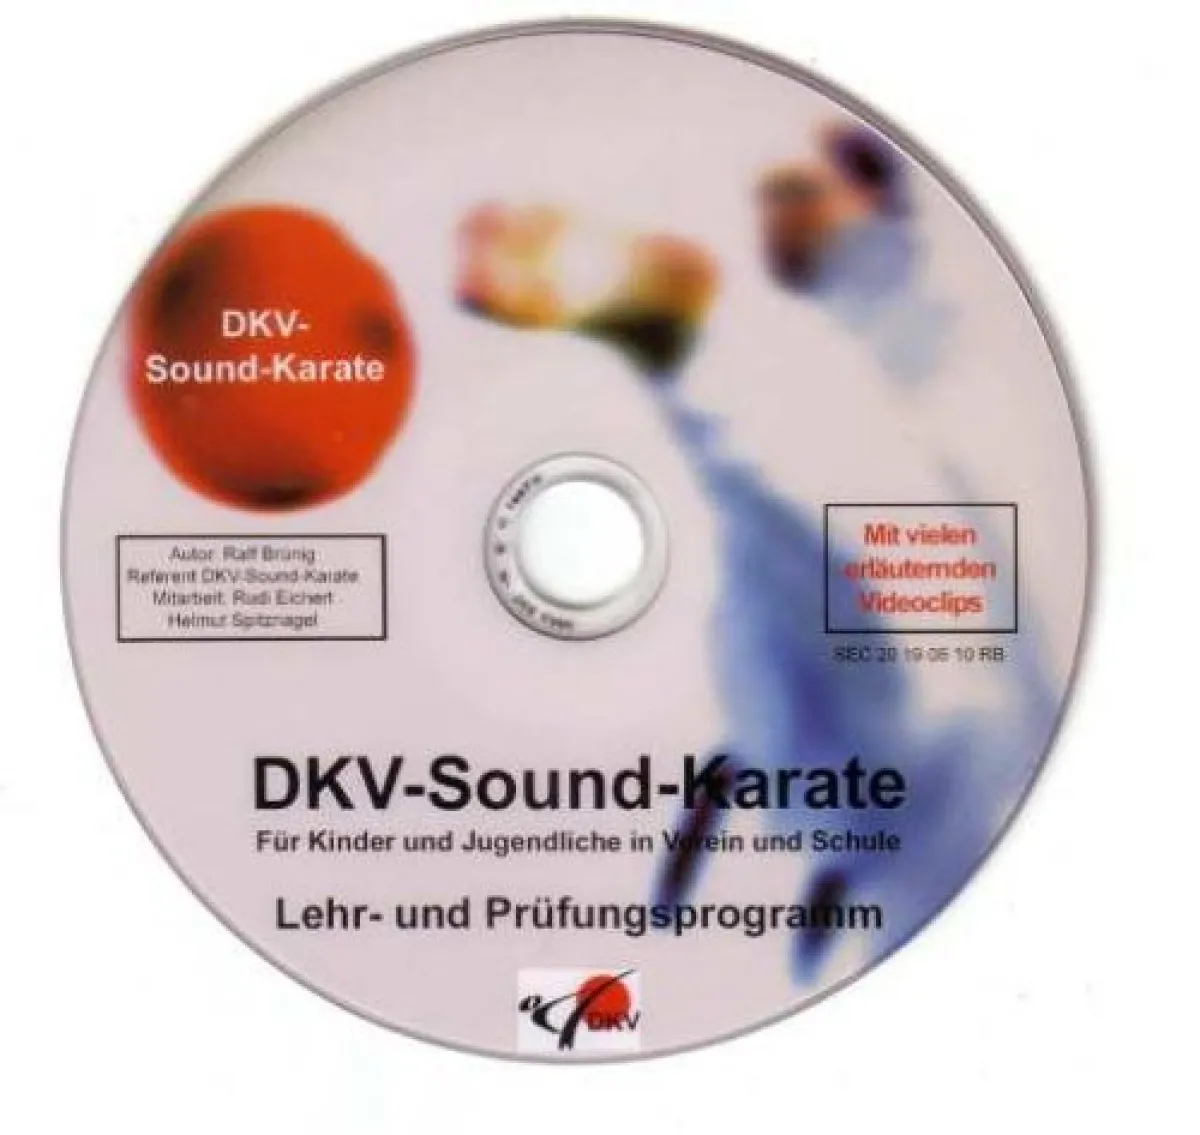 DVD DKV plan de kárate con sonido